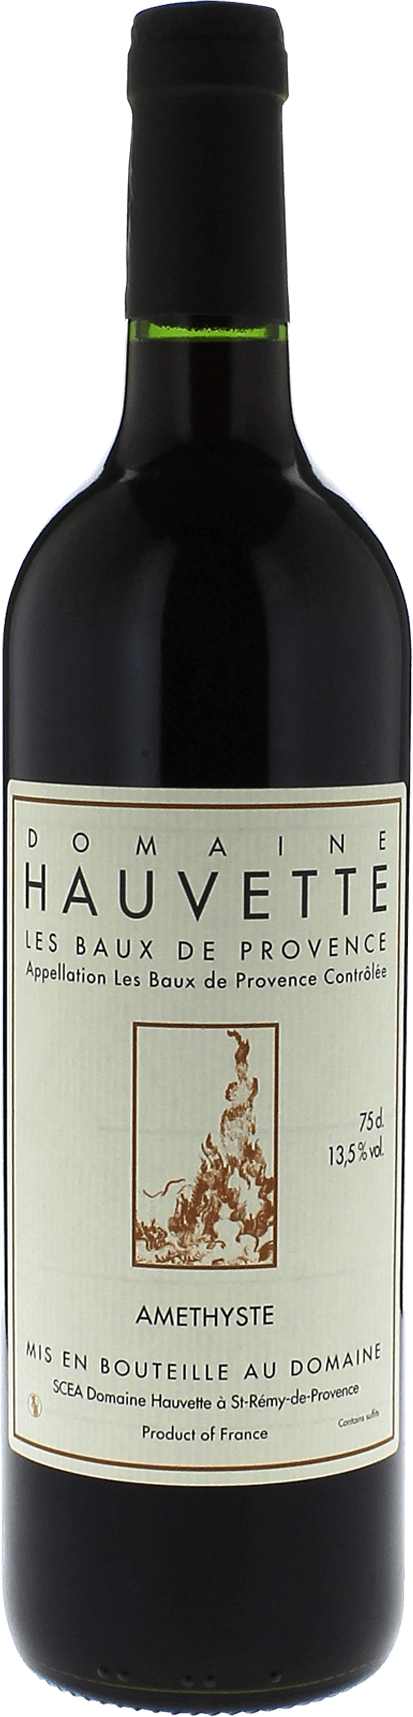 Domaine hauvette amethyste 2017  AOC Baux de Provence, Slection provence rouge